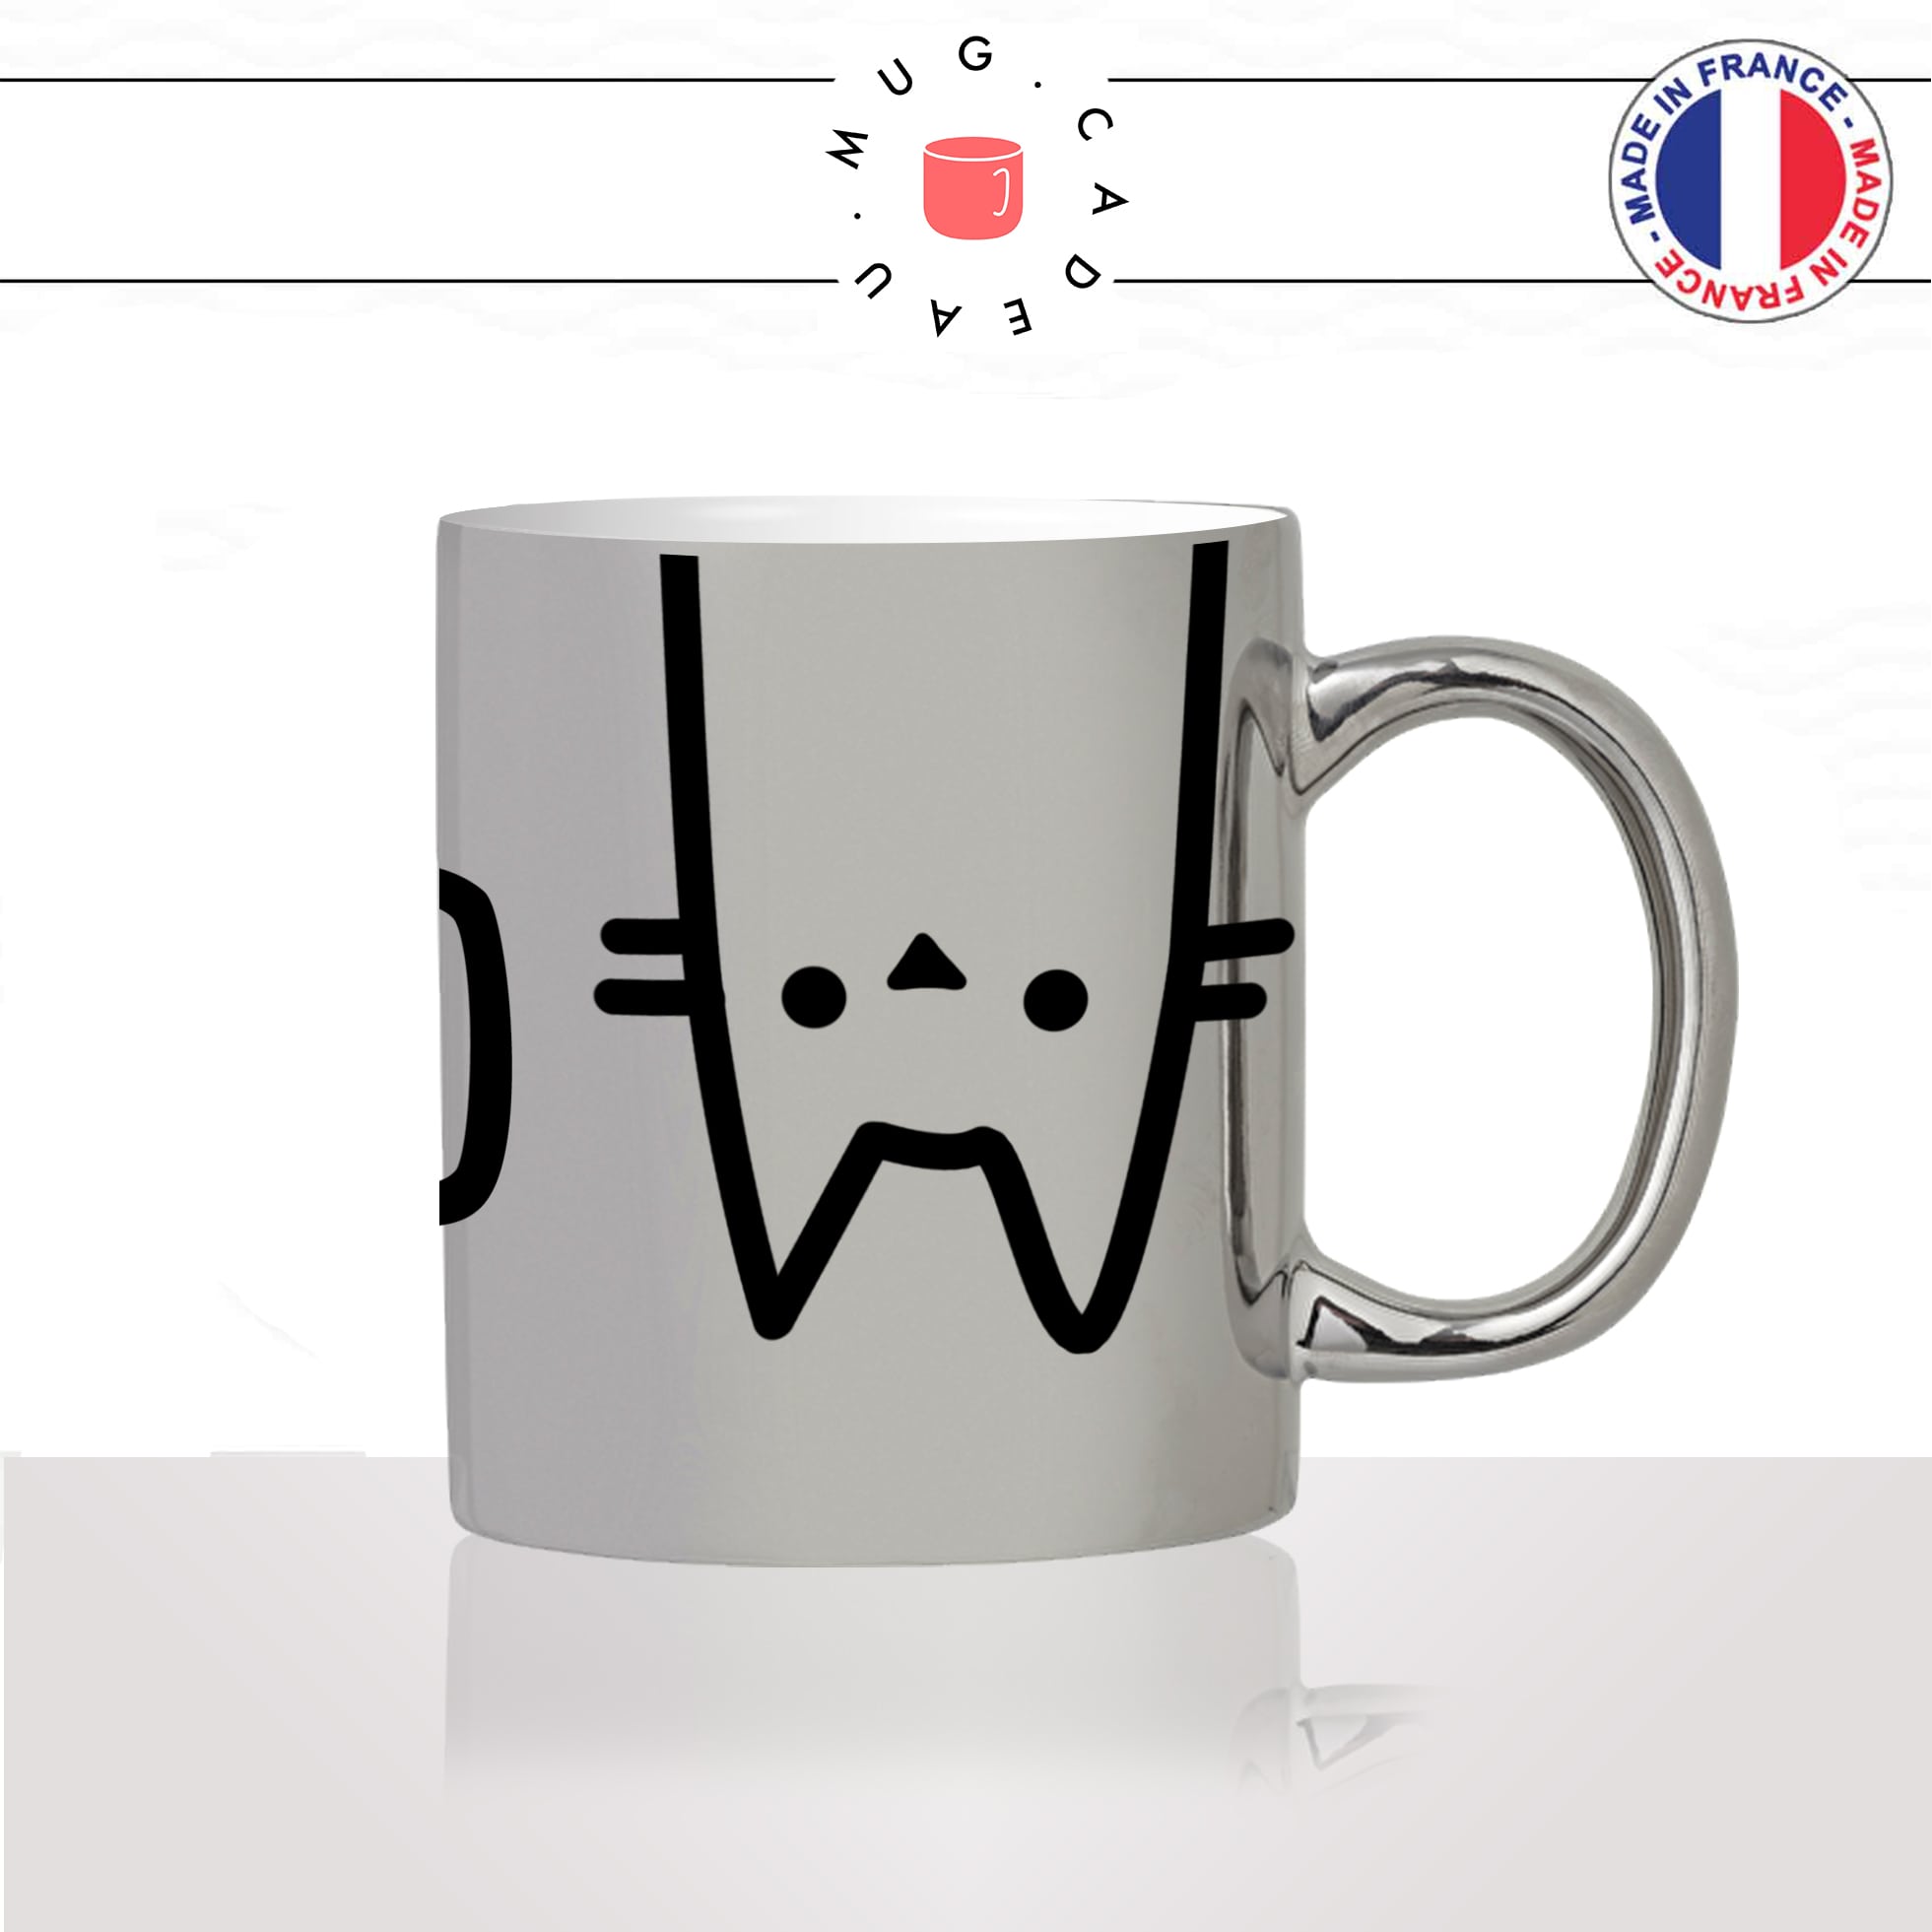 mug-tasse-argenté-silver-meow-miaou-tete-moustache-chat-mignon-animal-chaton-noir-fun-café-thé-idée-cadeau-original-personnalisé2-min